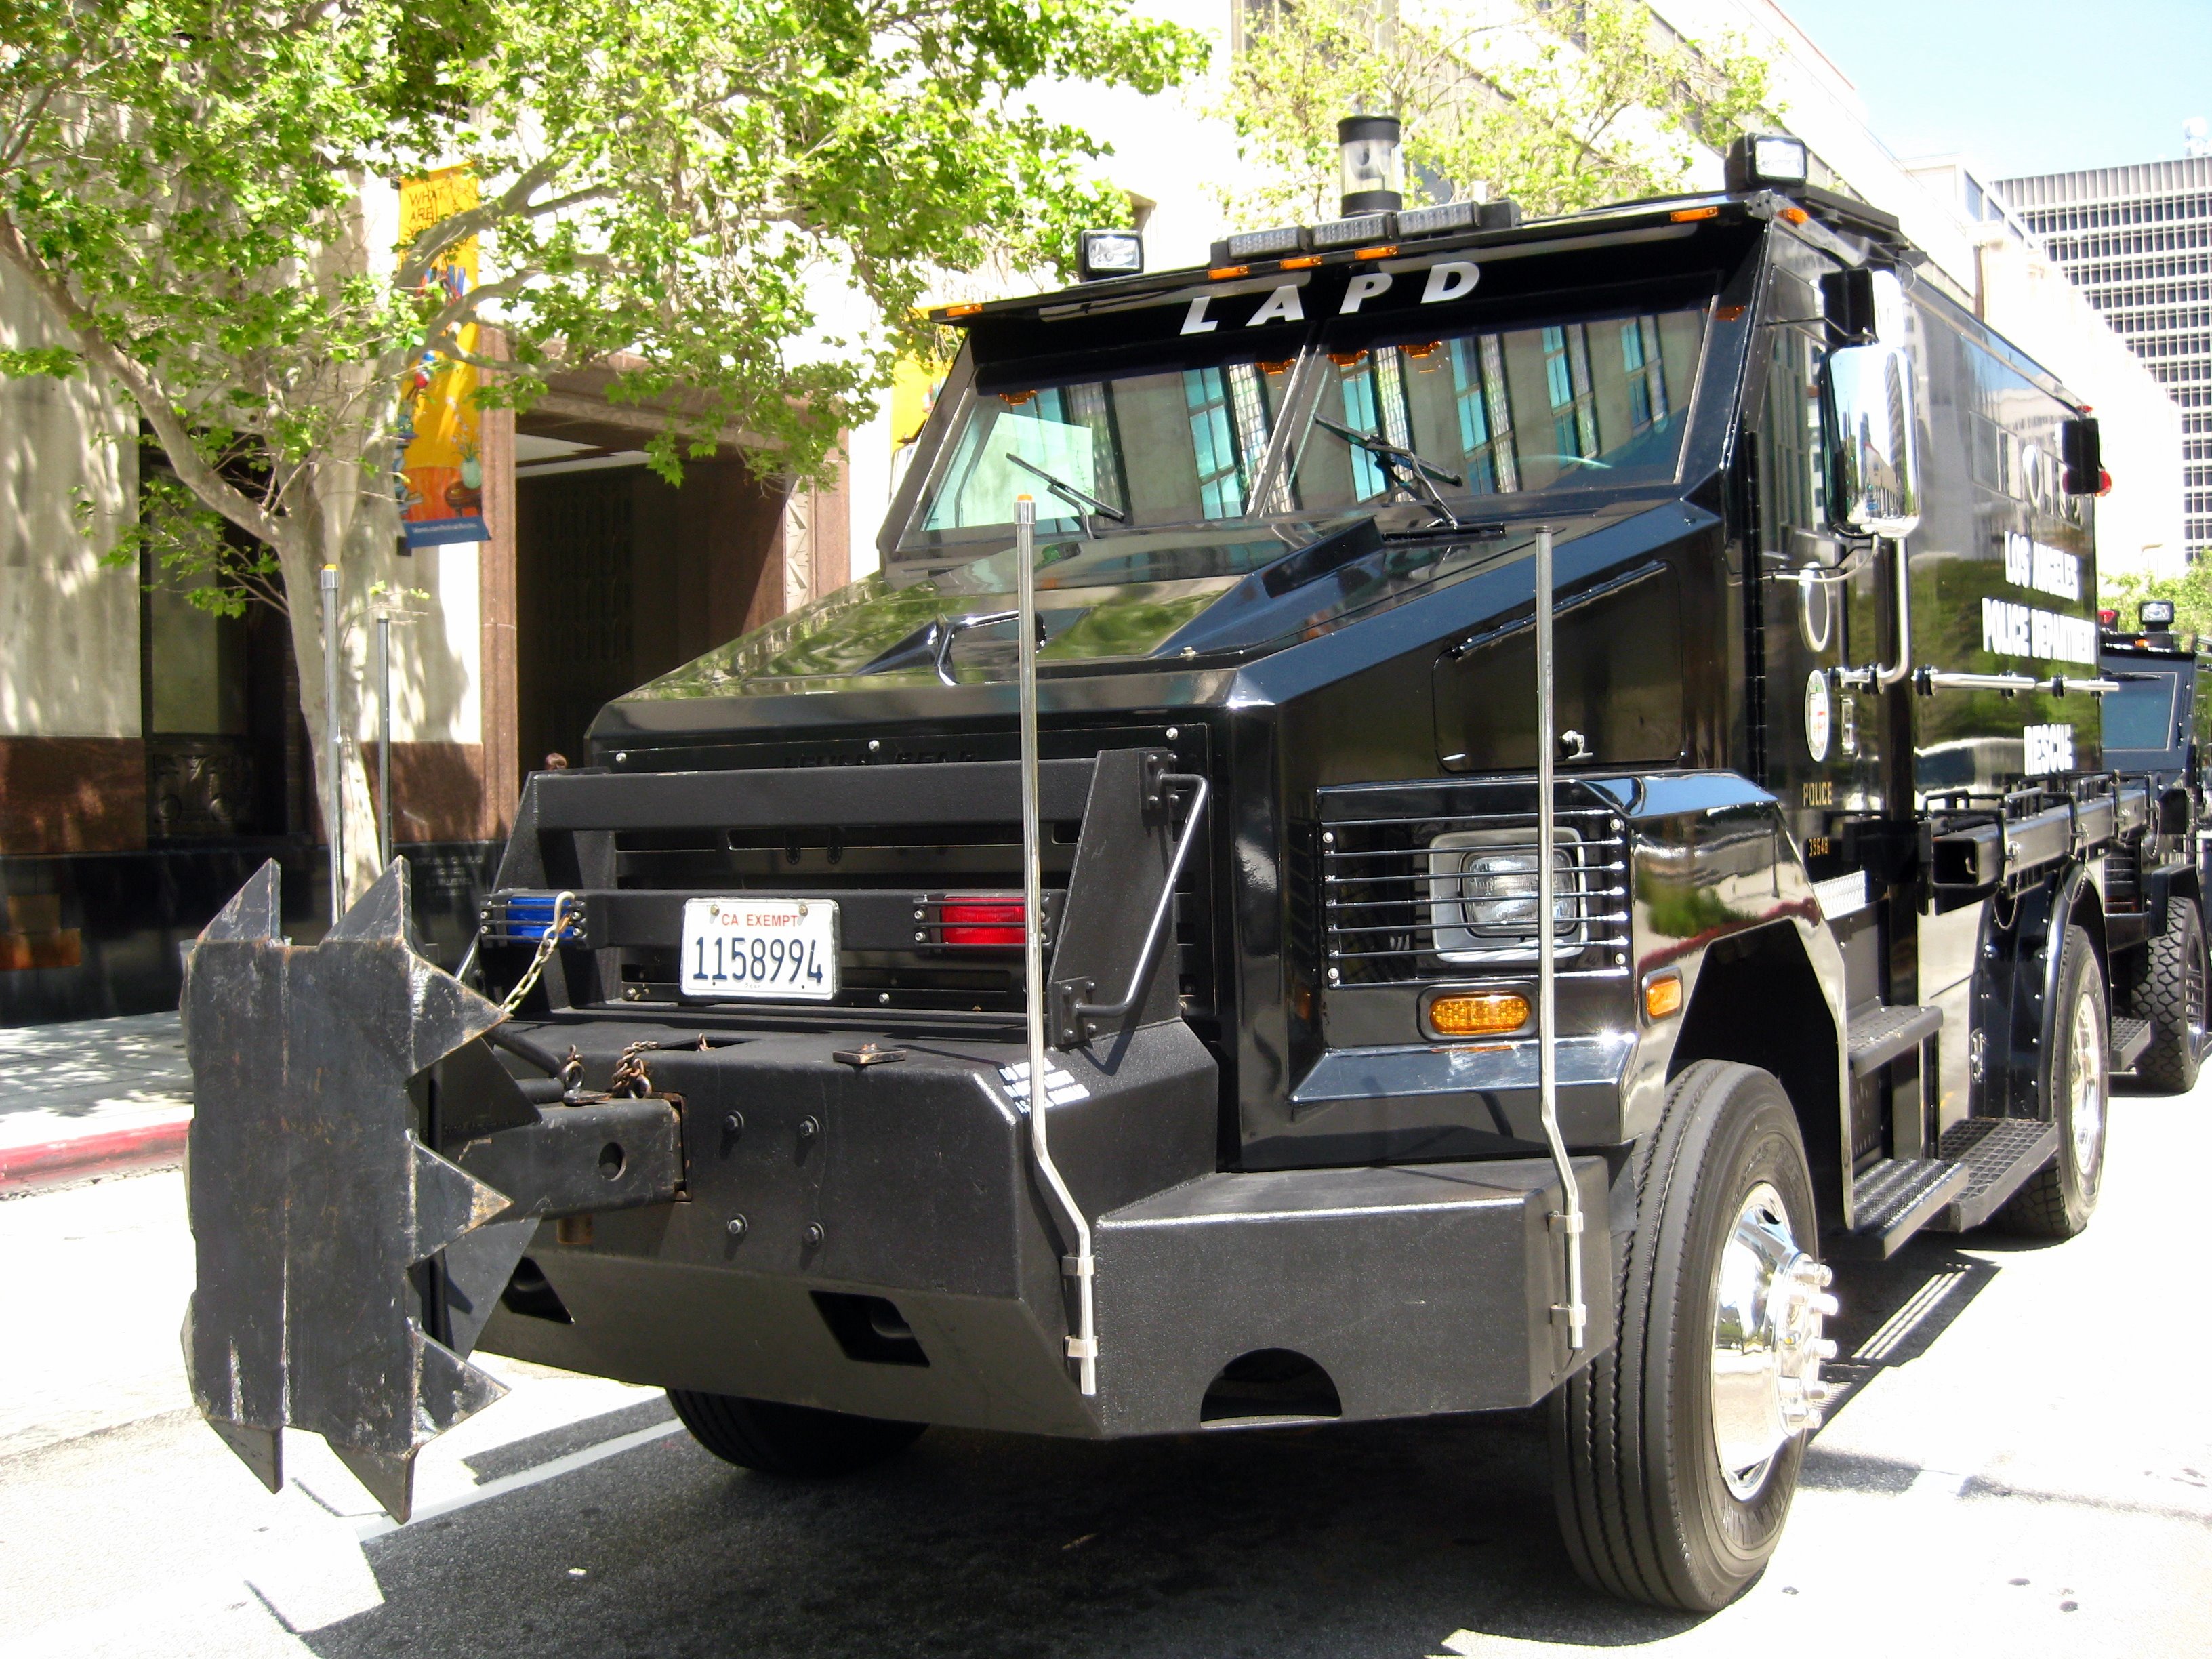 LAPD SWAT Rescue vehicle